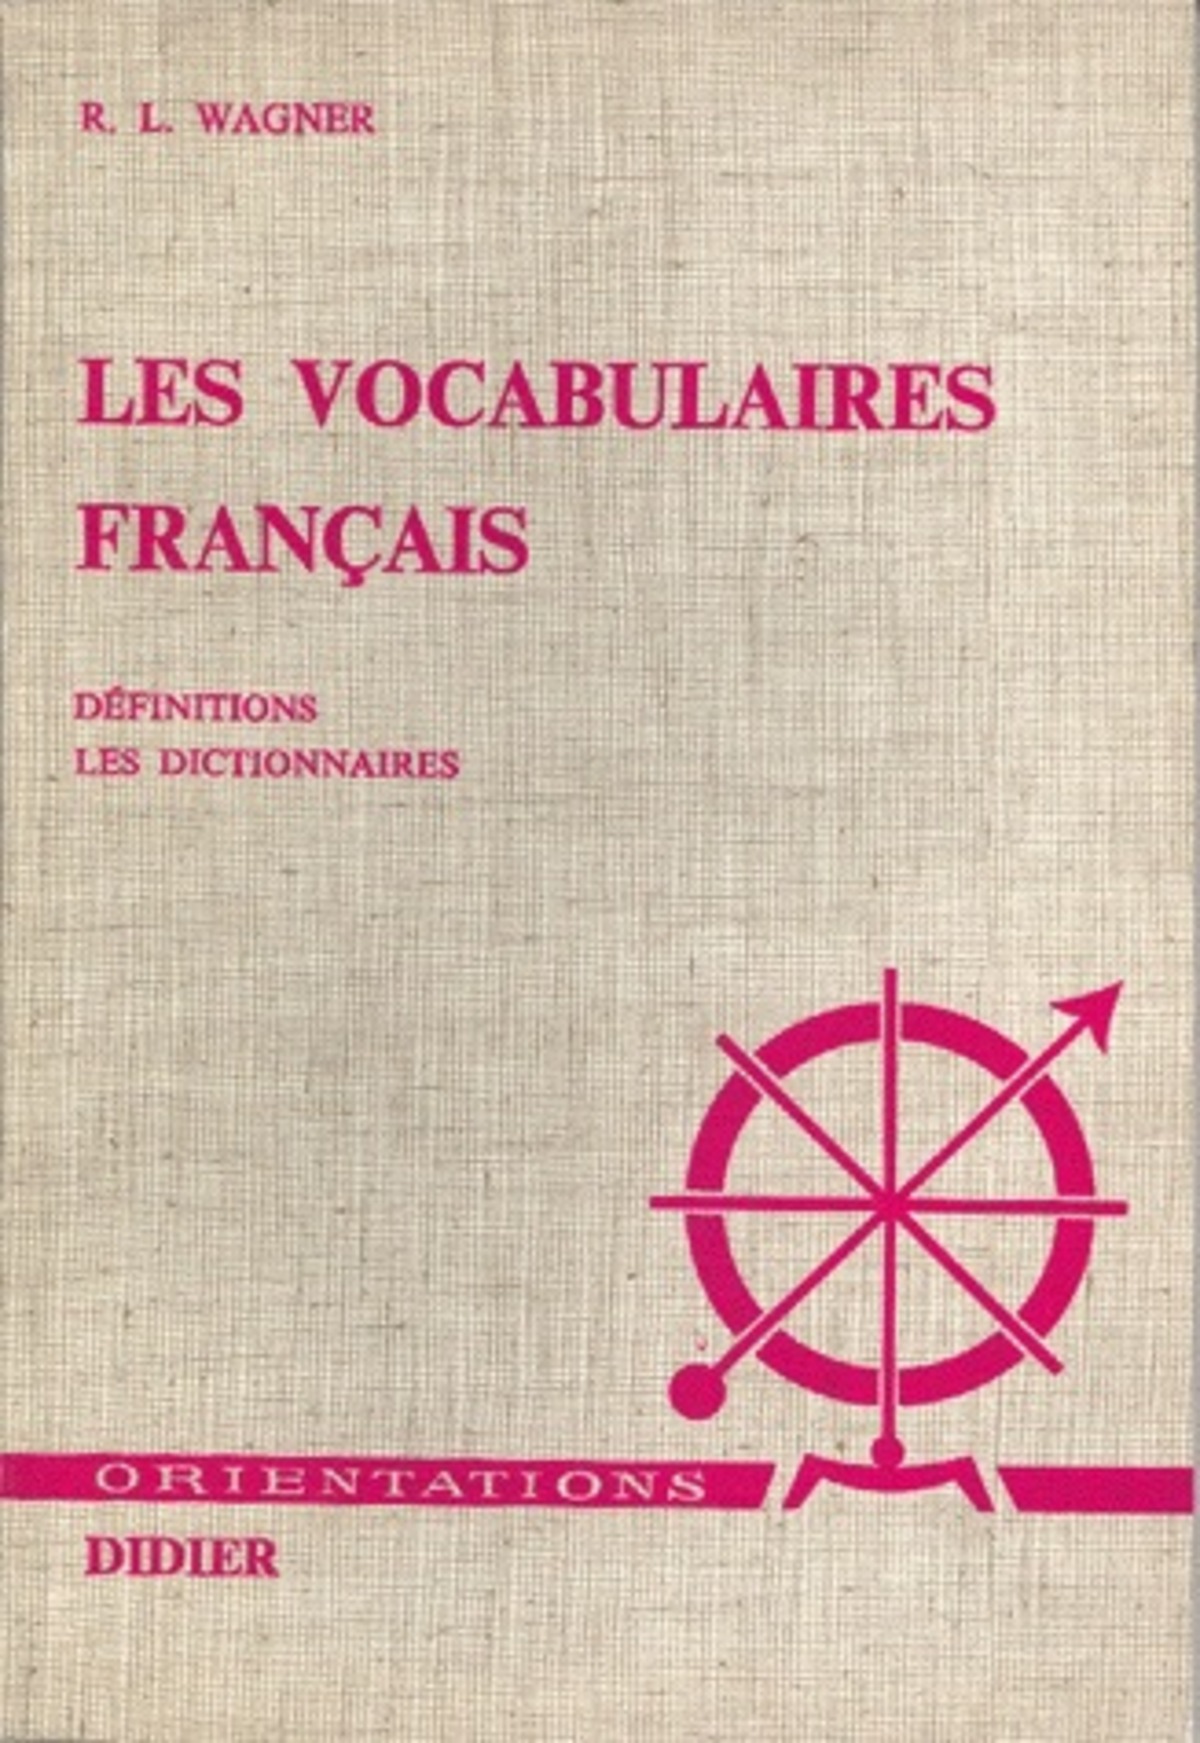 Les Vocabulaires français